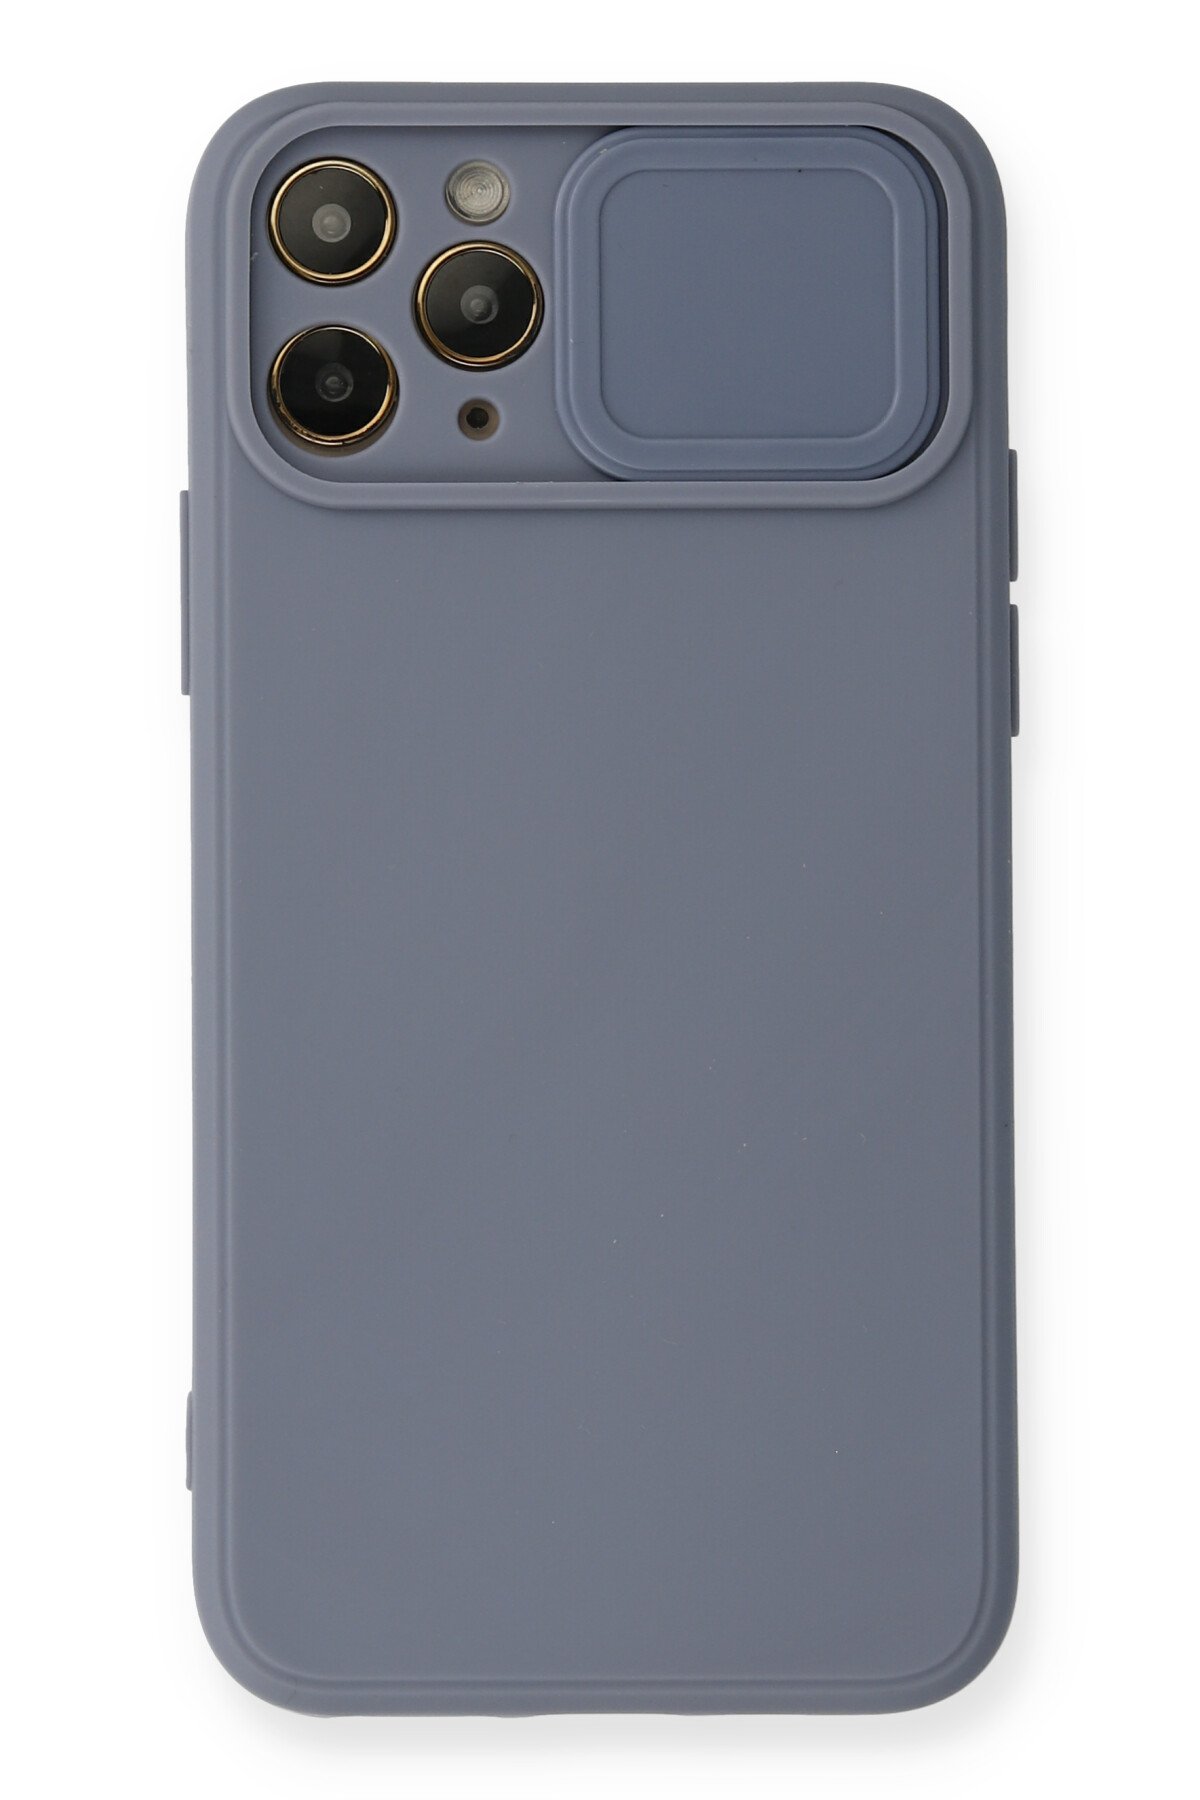 Newface iPhone 11 Pro Max Kılıf Sofya Yüzüklü Silikon Kapak - Yeşil